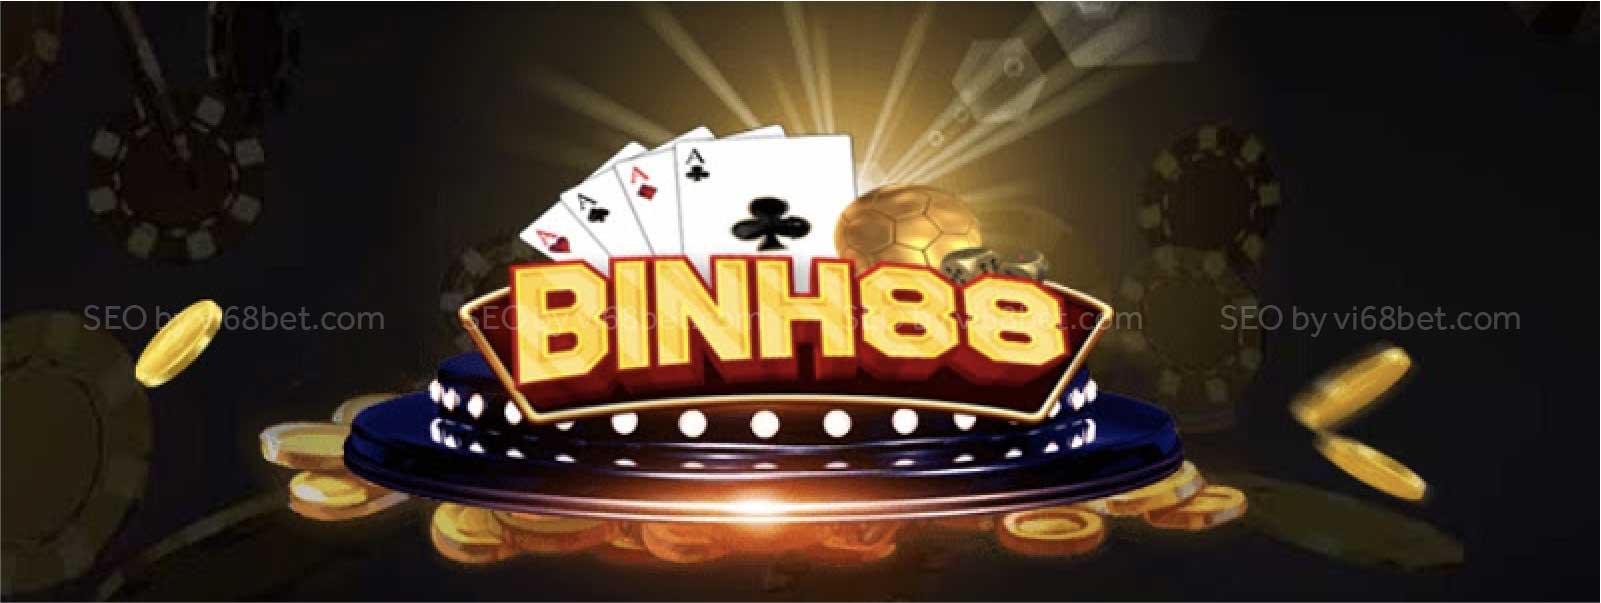 Binh88